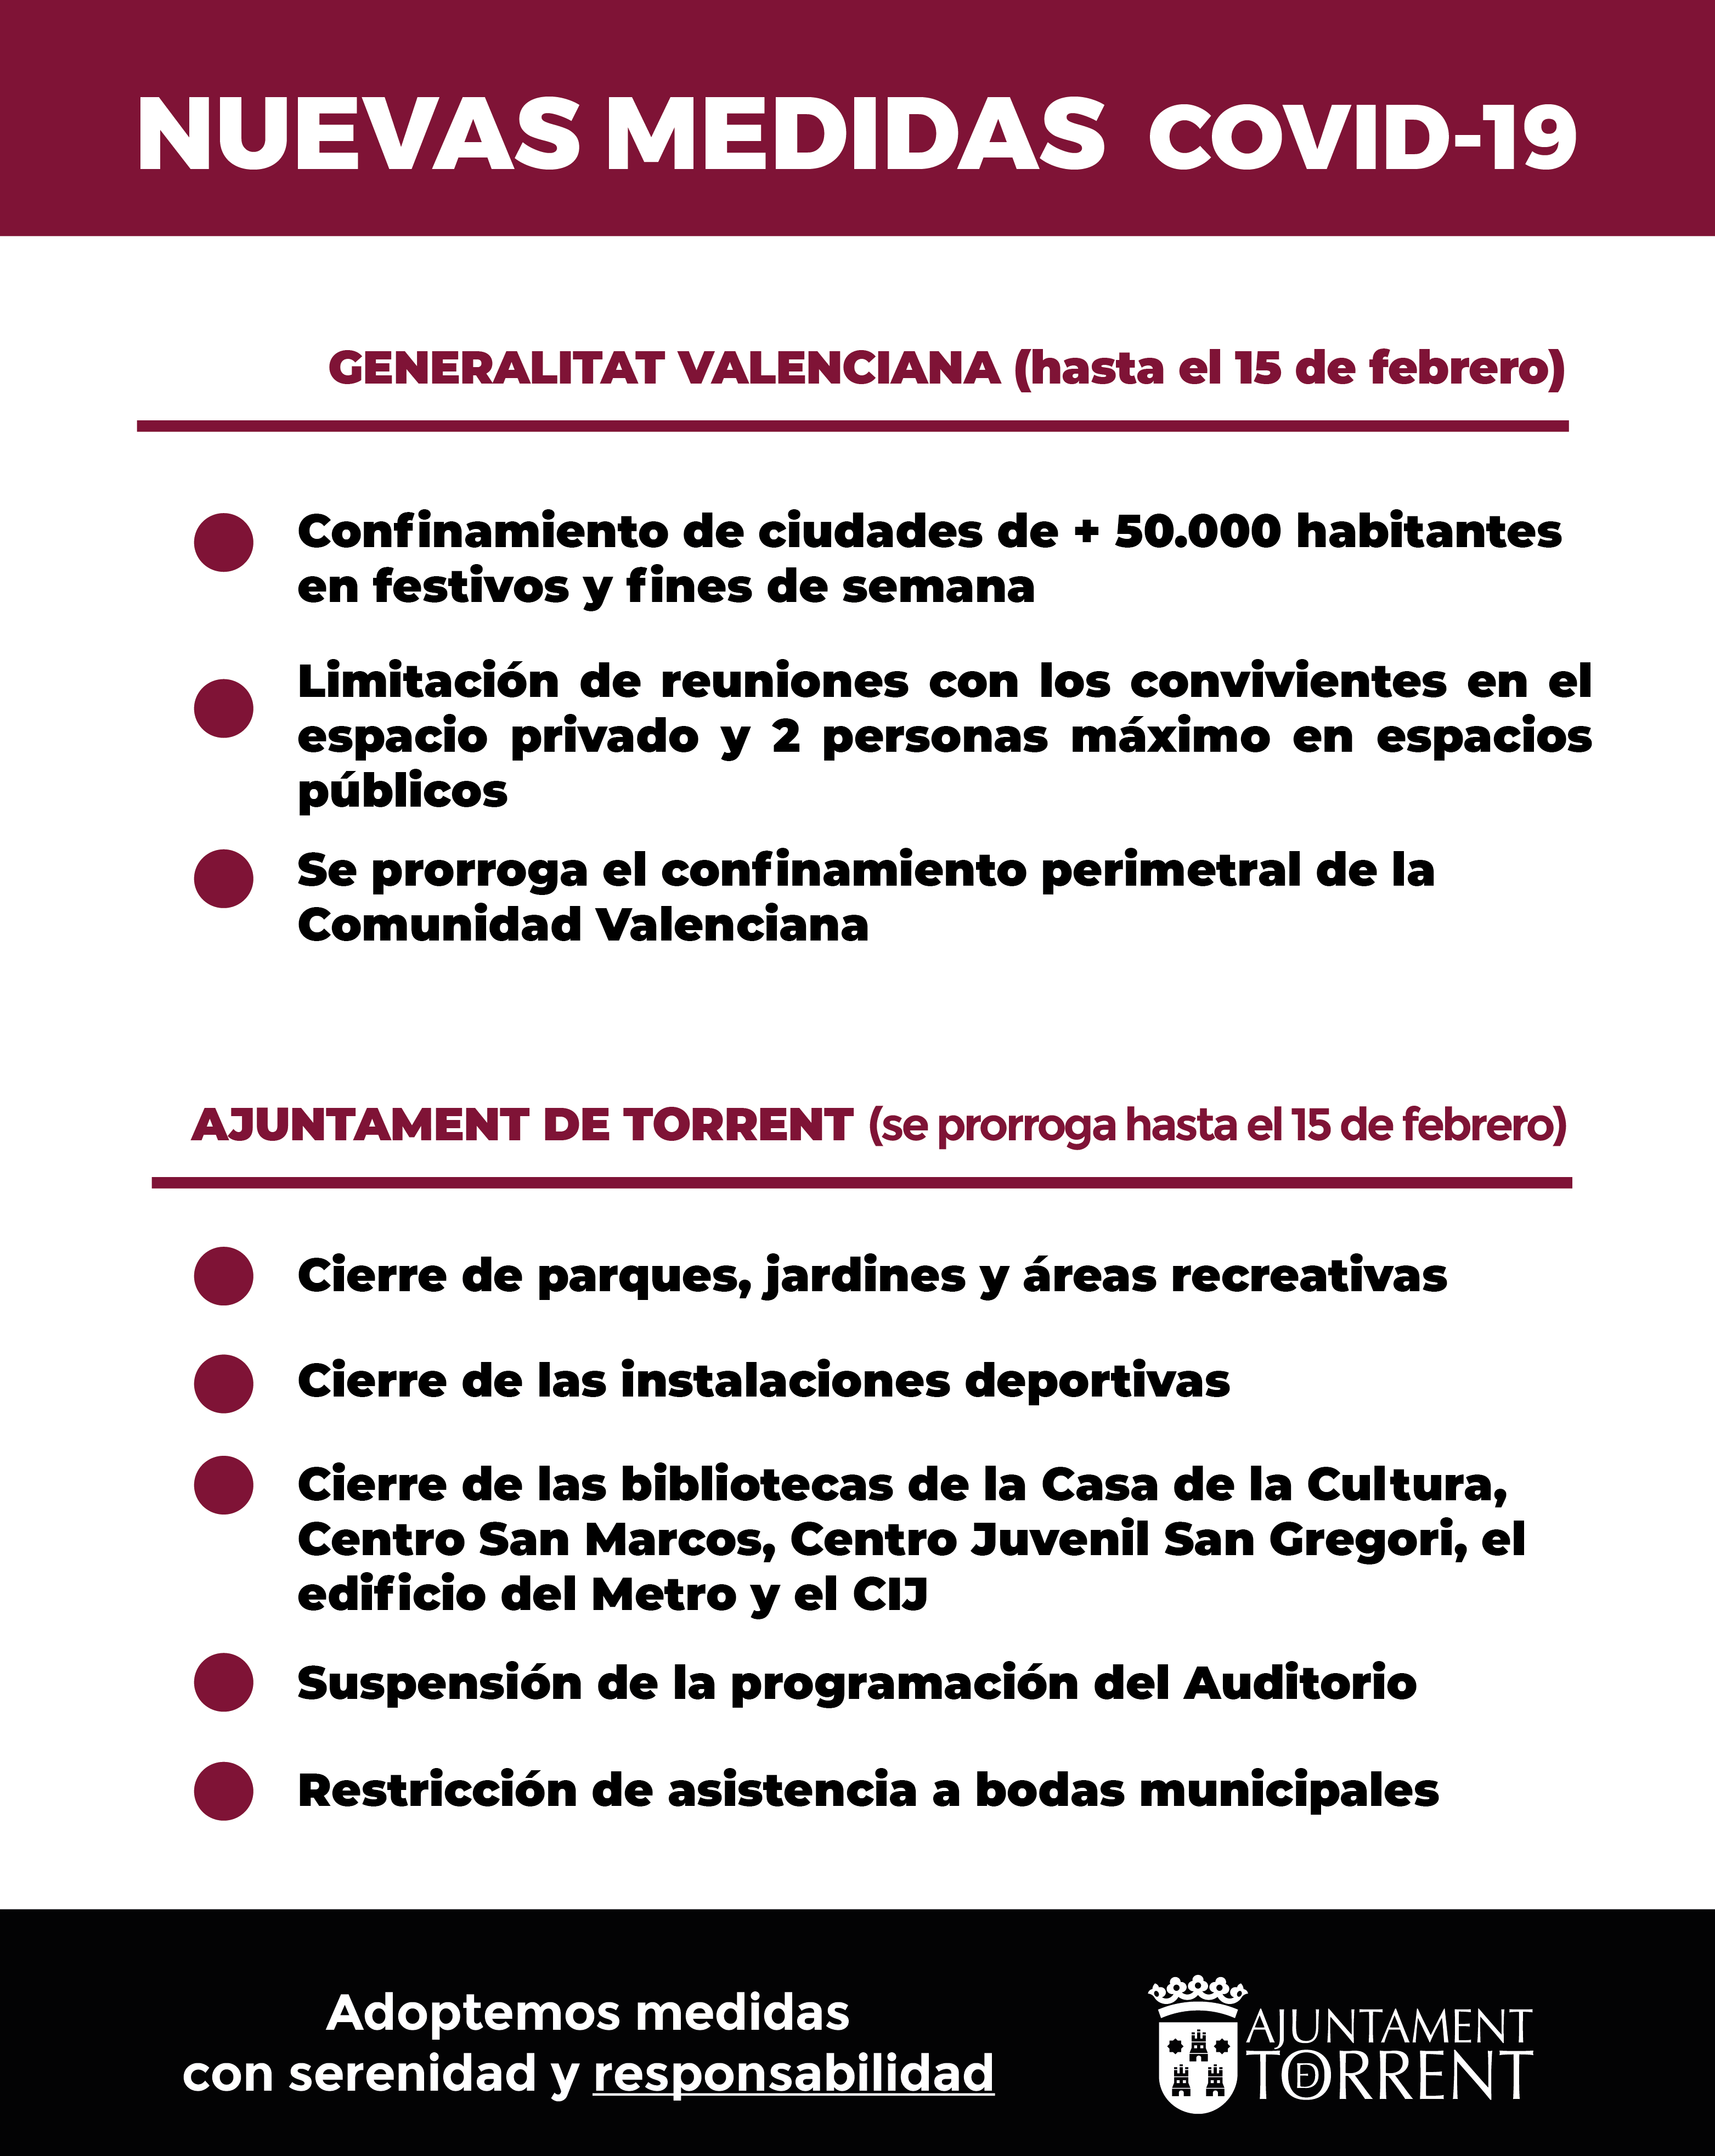 La Generalitat aprova un nou paquet de mesures contra la COVID-19 en la Comunitat Valenciana